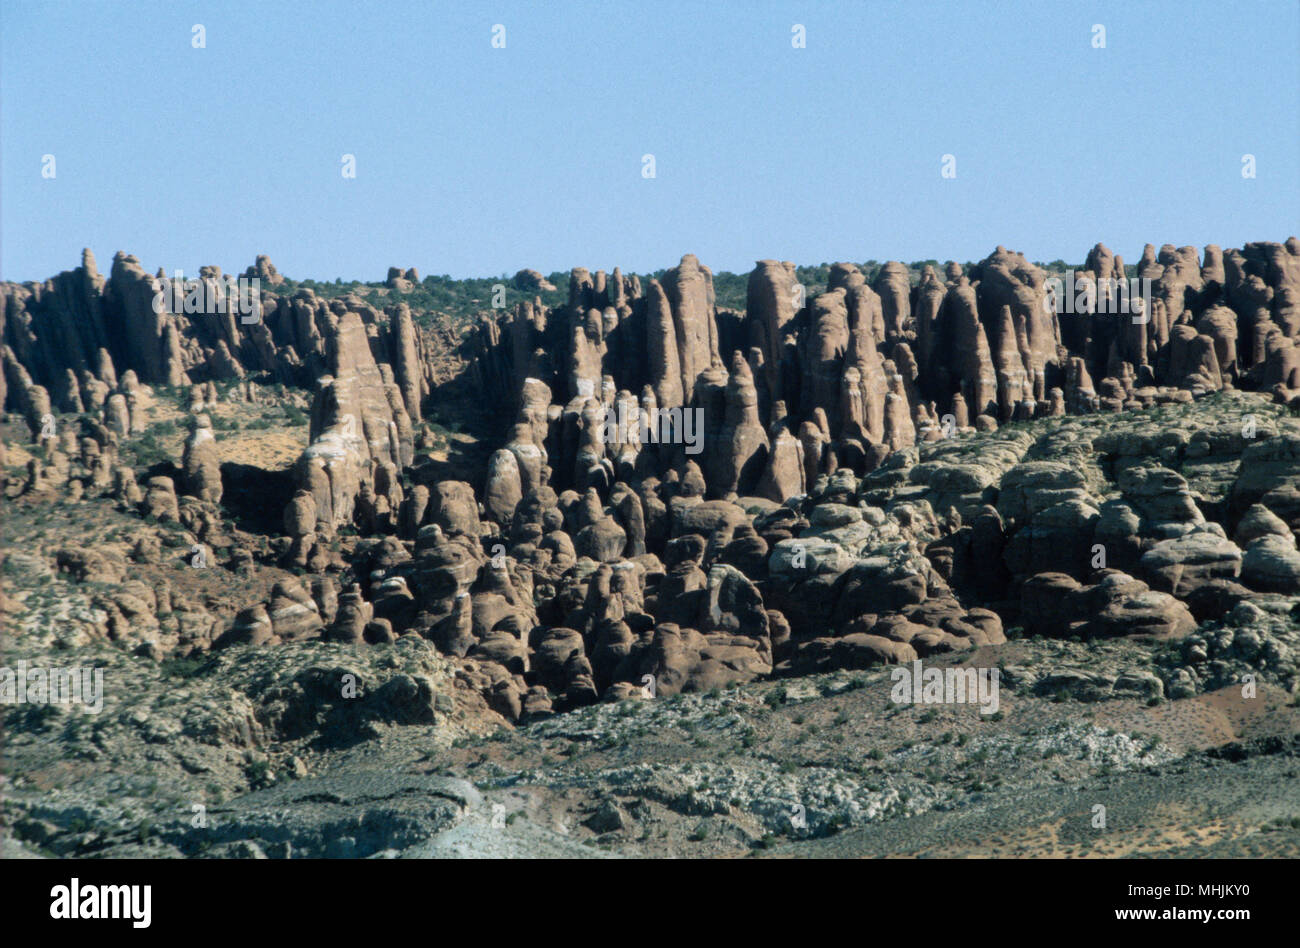 Der lange, Nadel-wie Säulen aus Sandstein bilden sowohl das Labyrinth Andy die Nadeln Abschnitte des Canyonland National Parks in Utah. Stockfoto